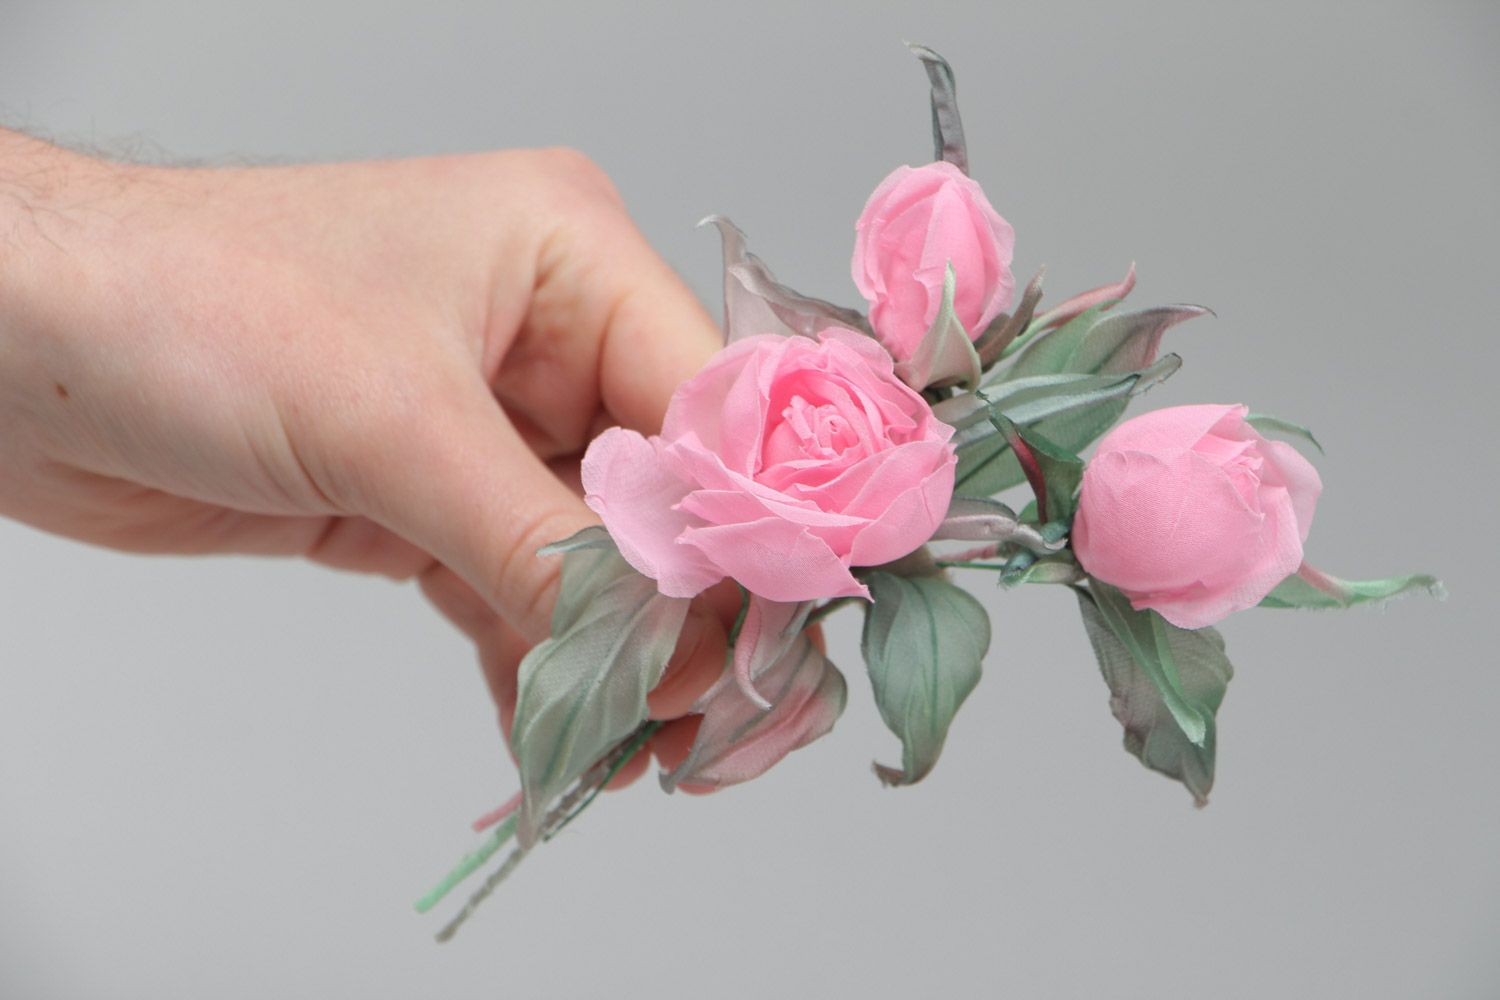 Брошь цветы из ткани розовая нежная красивая для девушки модная ручной работы фото 5